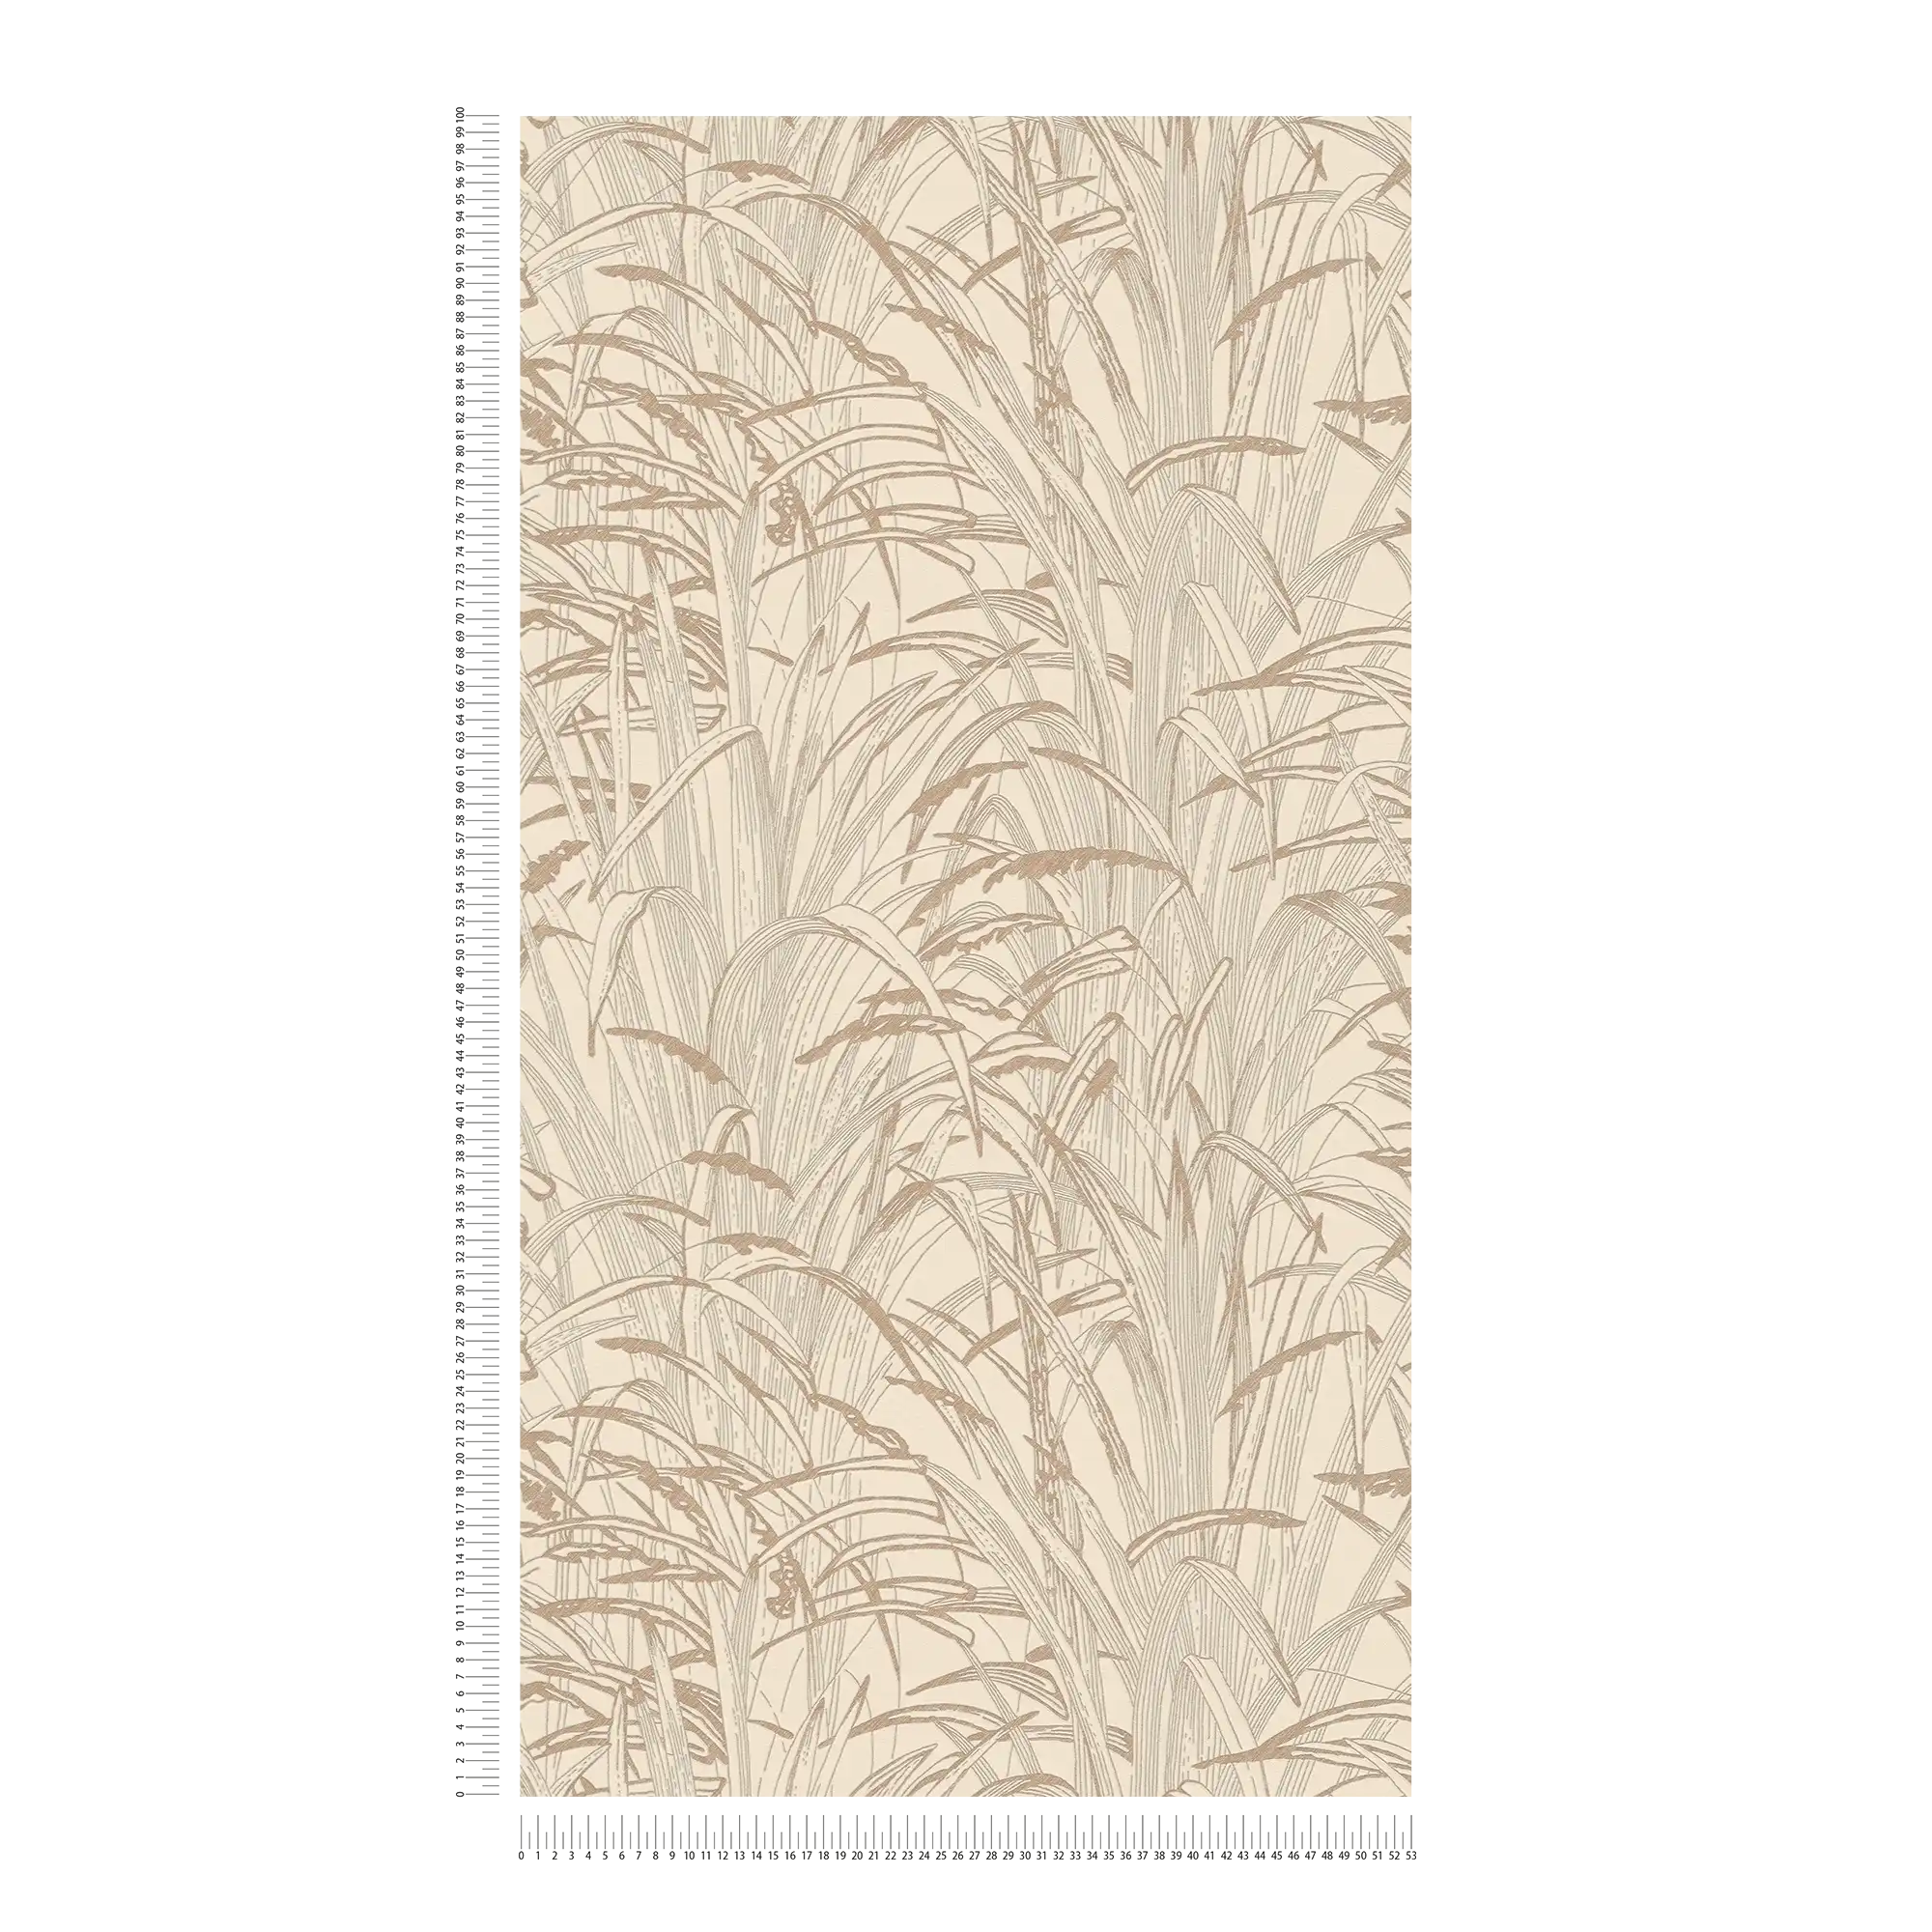             Leaves wallpaper metallic design - beige, metallic
        